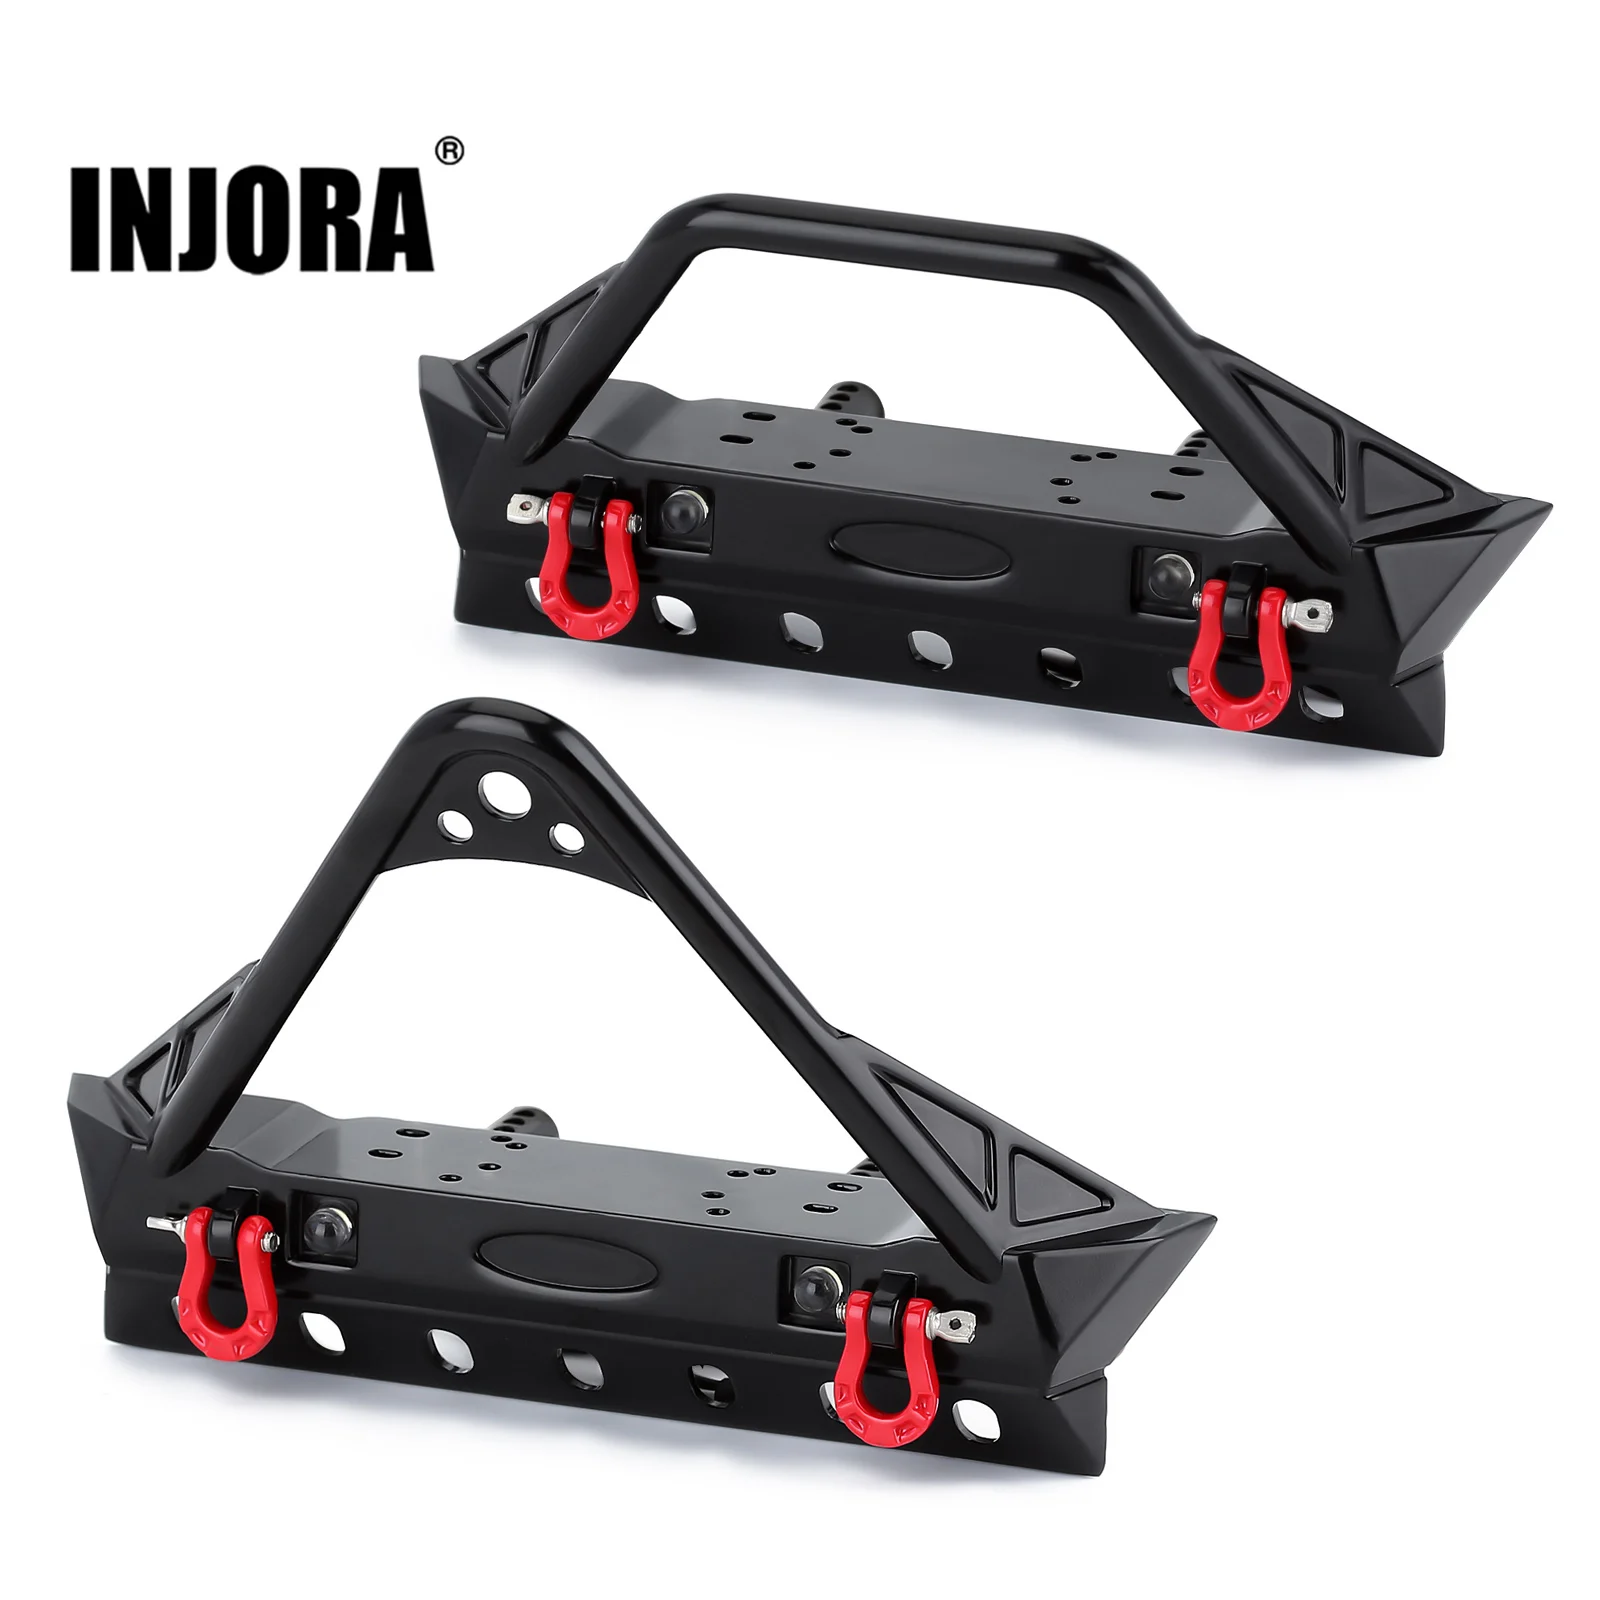 INJORA-parachoques delantero de Metal con luces para coche RC Crawler Axial SCX10 1/10 SCX10 III AXI03007 AXI03003 TRX4, actualización, 90046